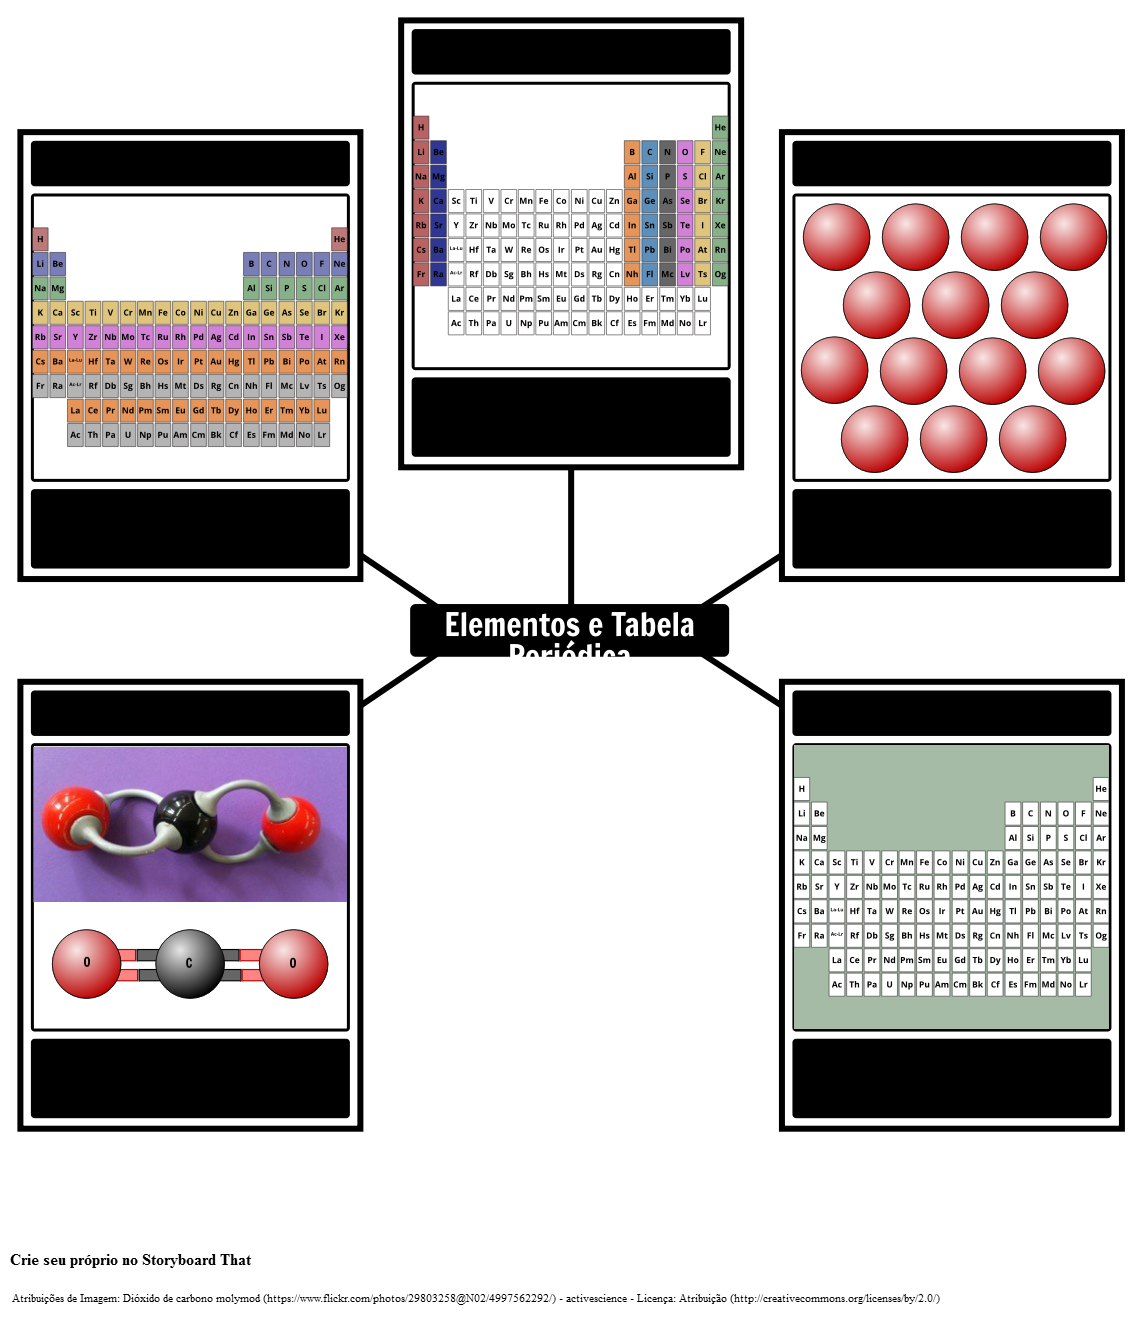 Elementos e o Vocabulário de Tabela Periódica